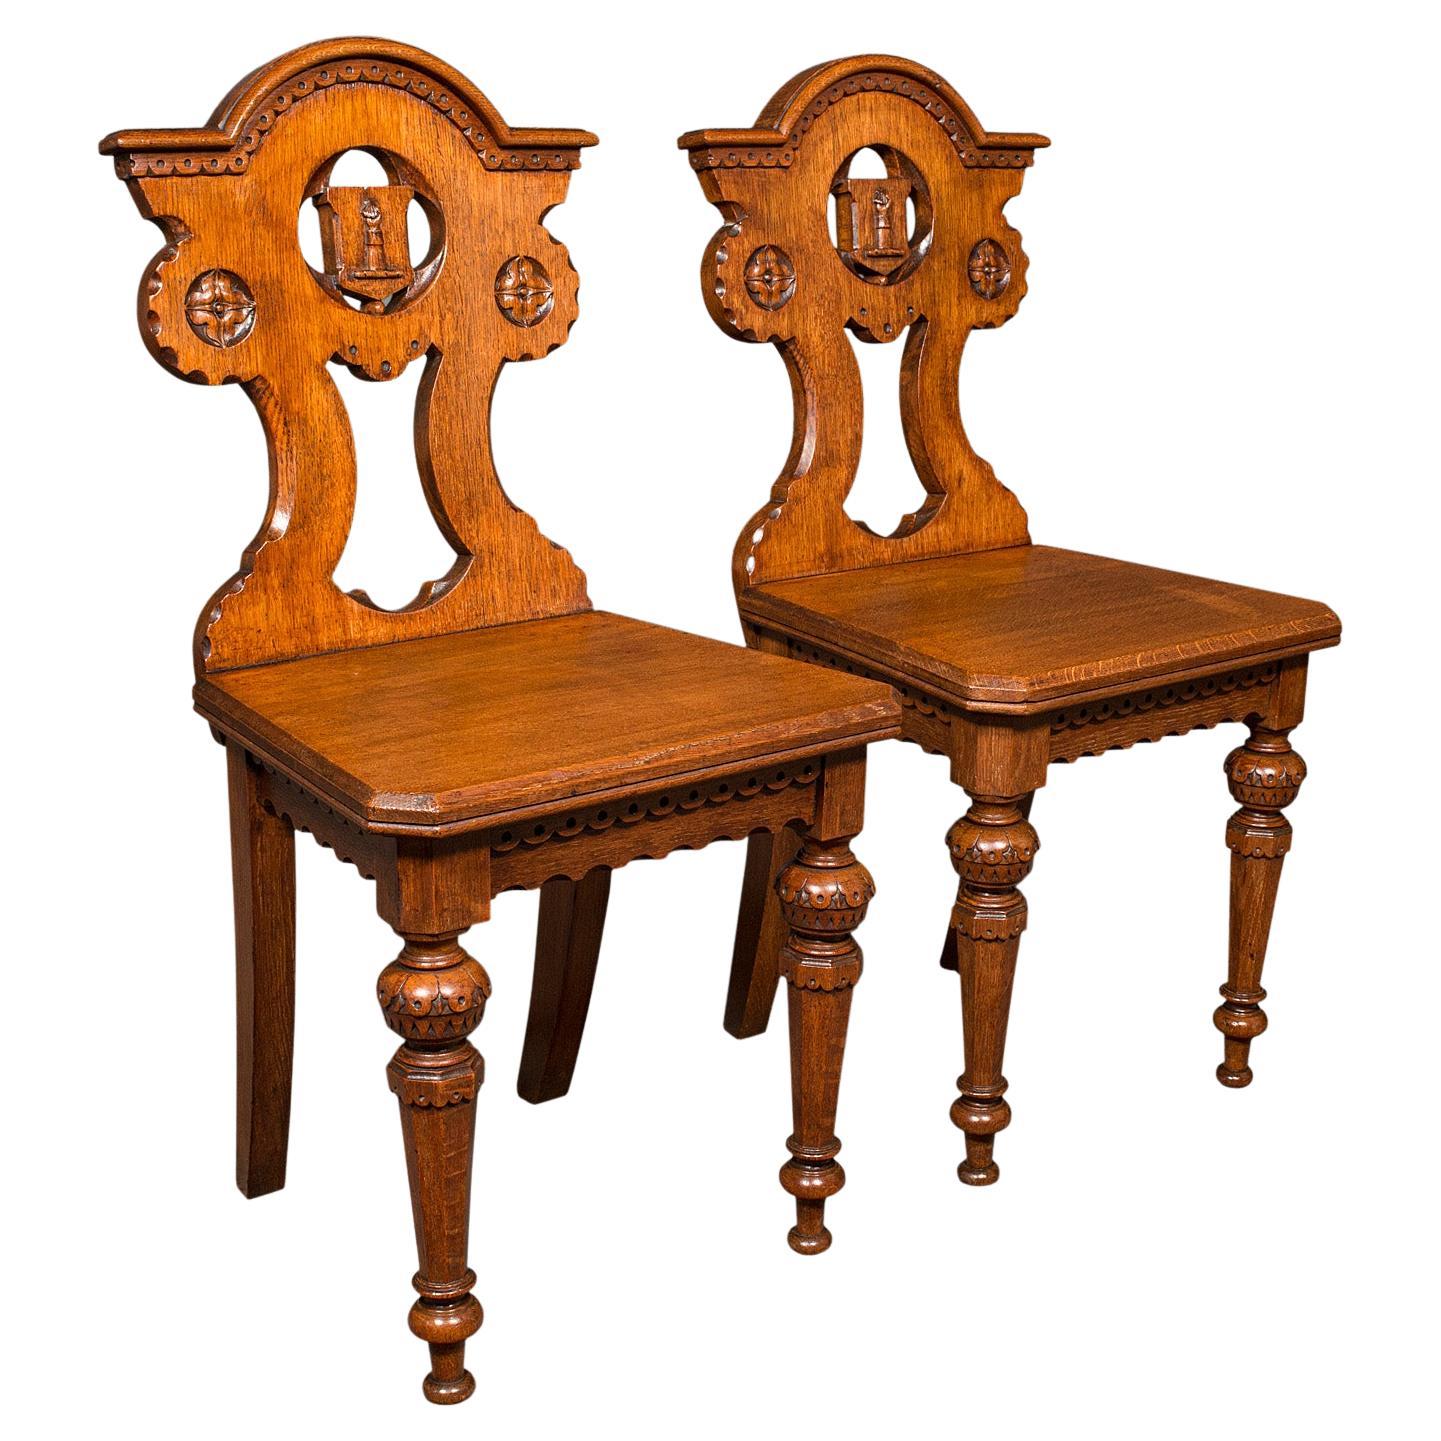 Paire de chaises d'entrée anciennes, écossaises, chêne, assise, style Arts & Crafts, victorien